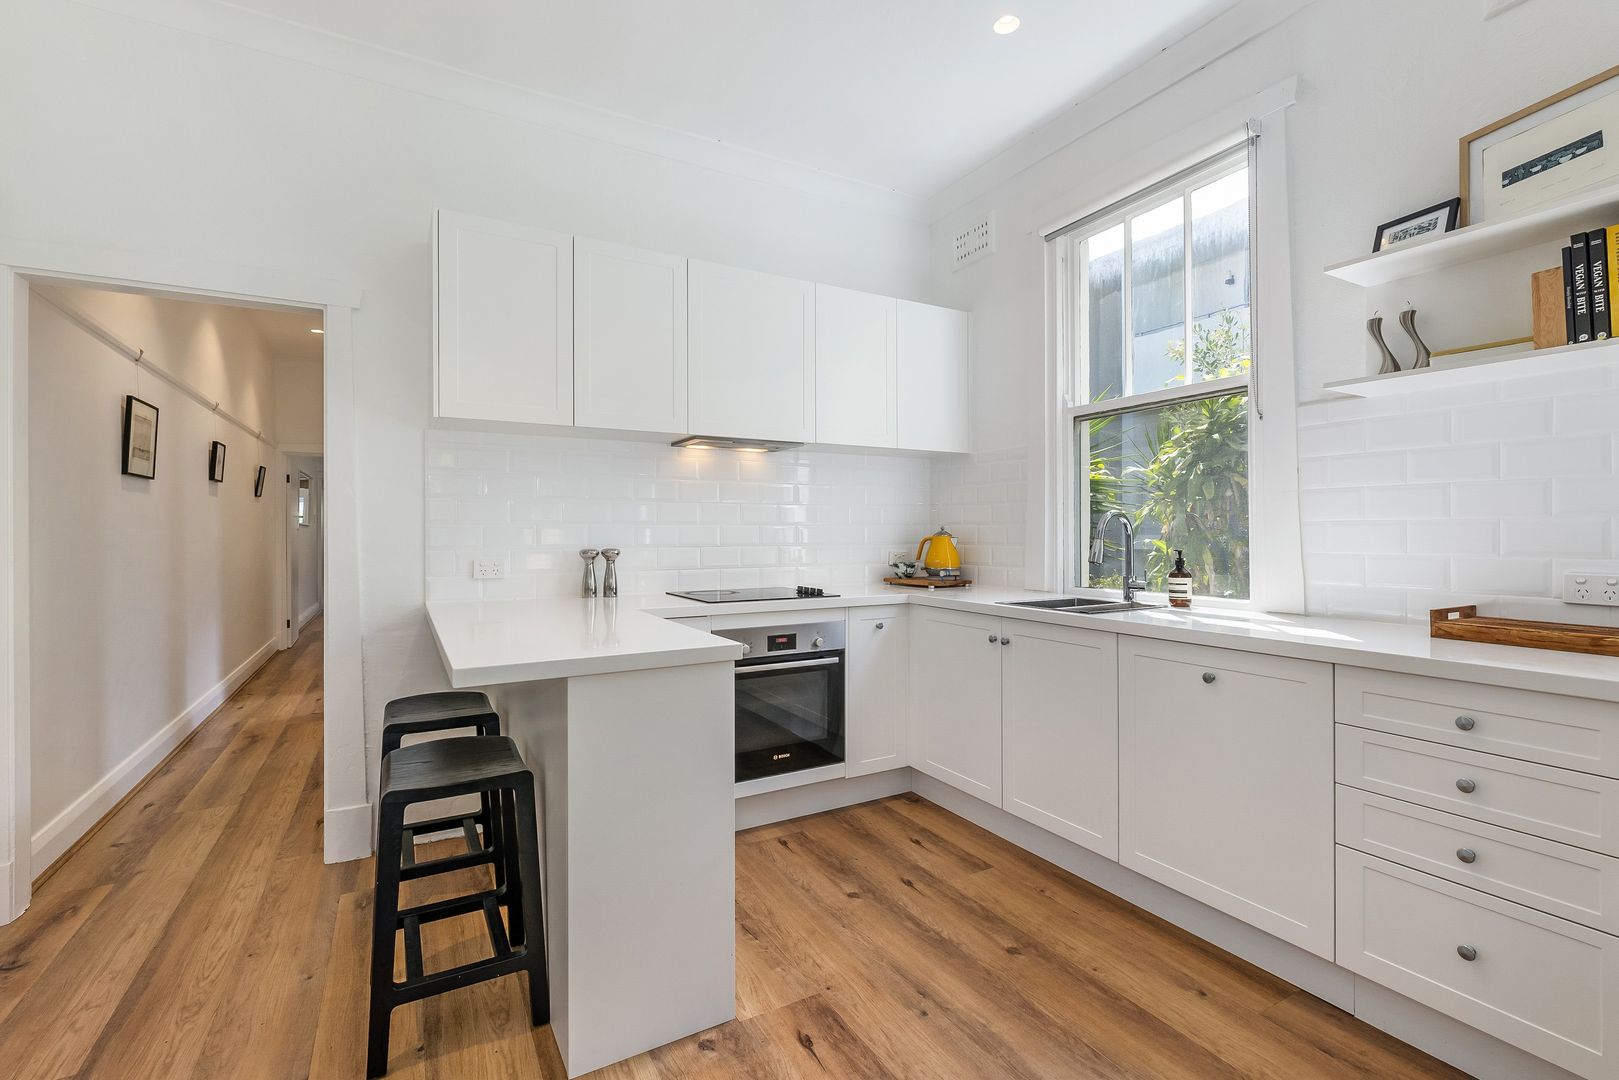 Home Buyer in Alexander St, Coogee, Sydney - Kitchen